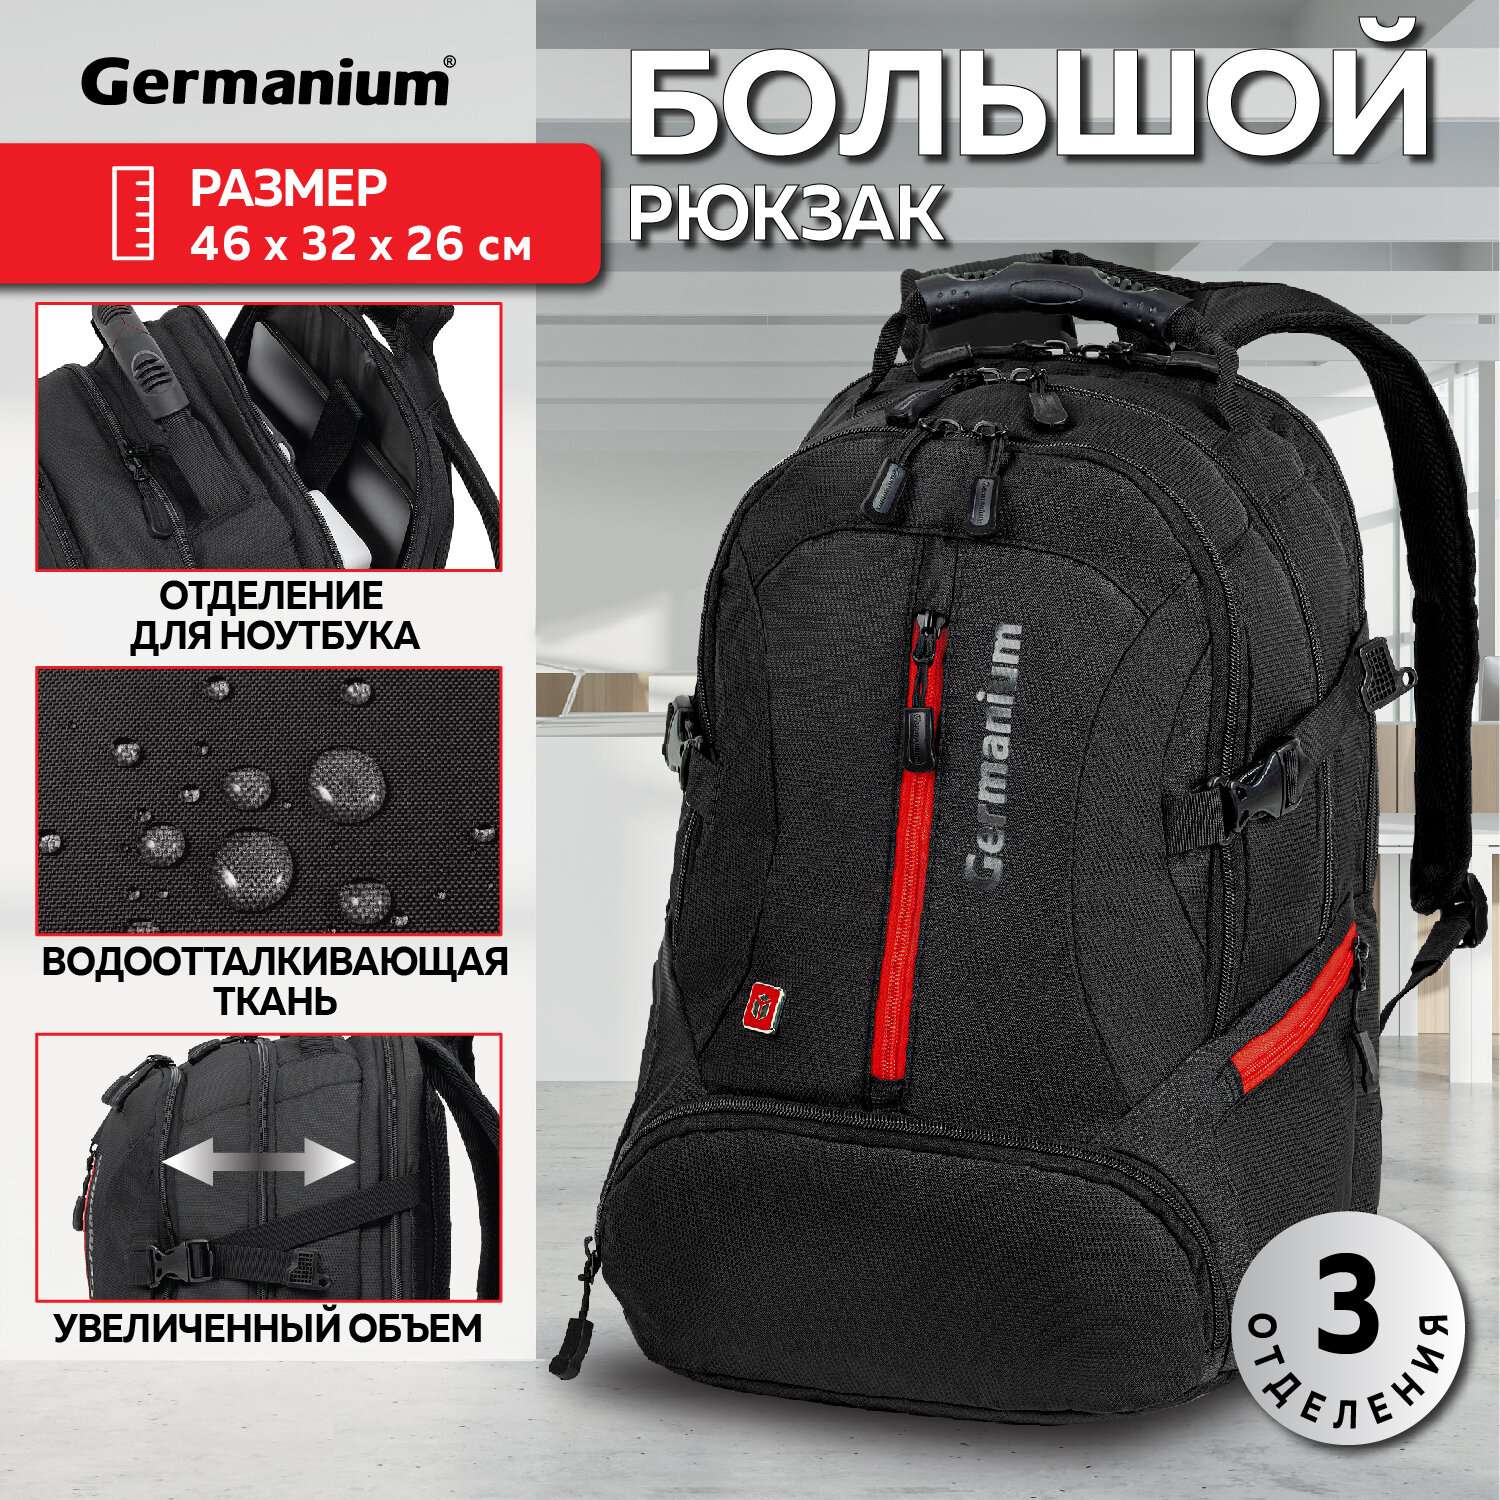 Рюкзак Germanium S-03 универсальный с отделением для ноутбука увеличенный объем черный - фото 1